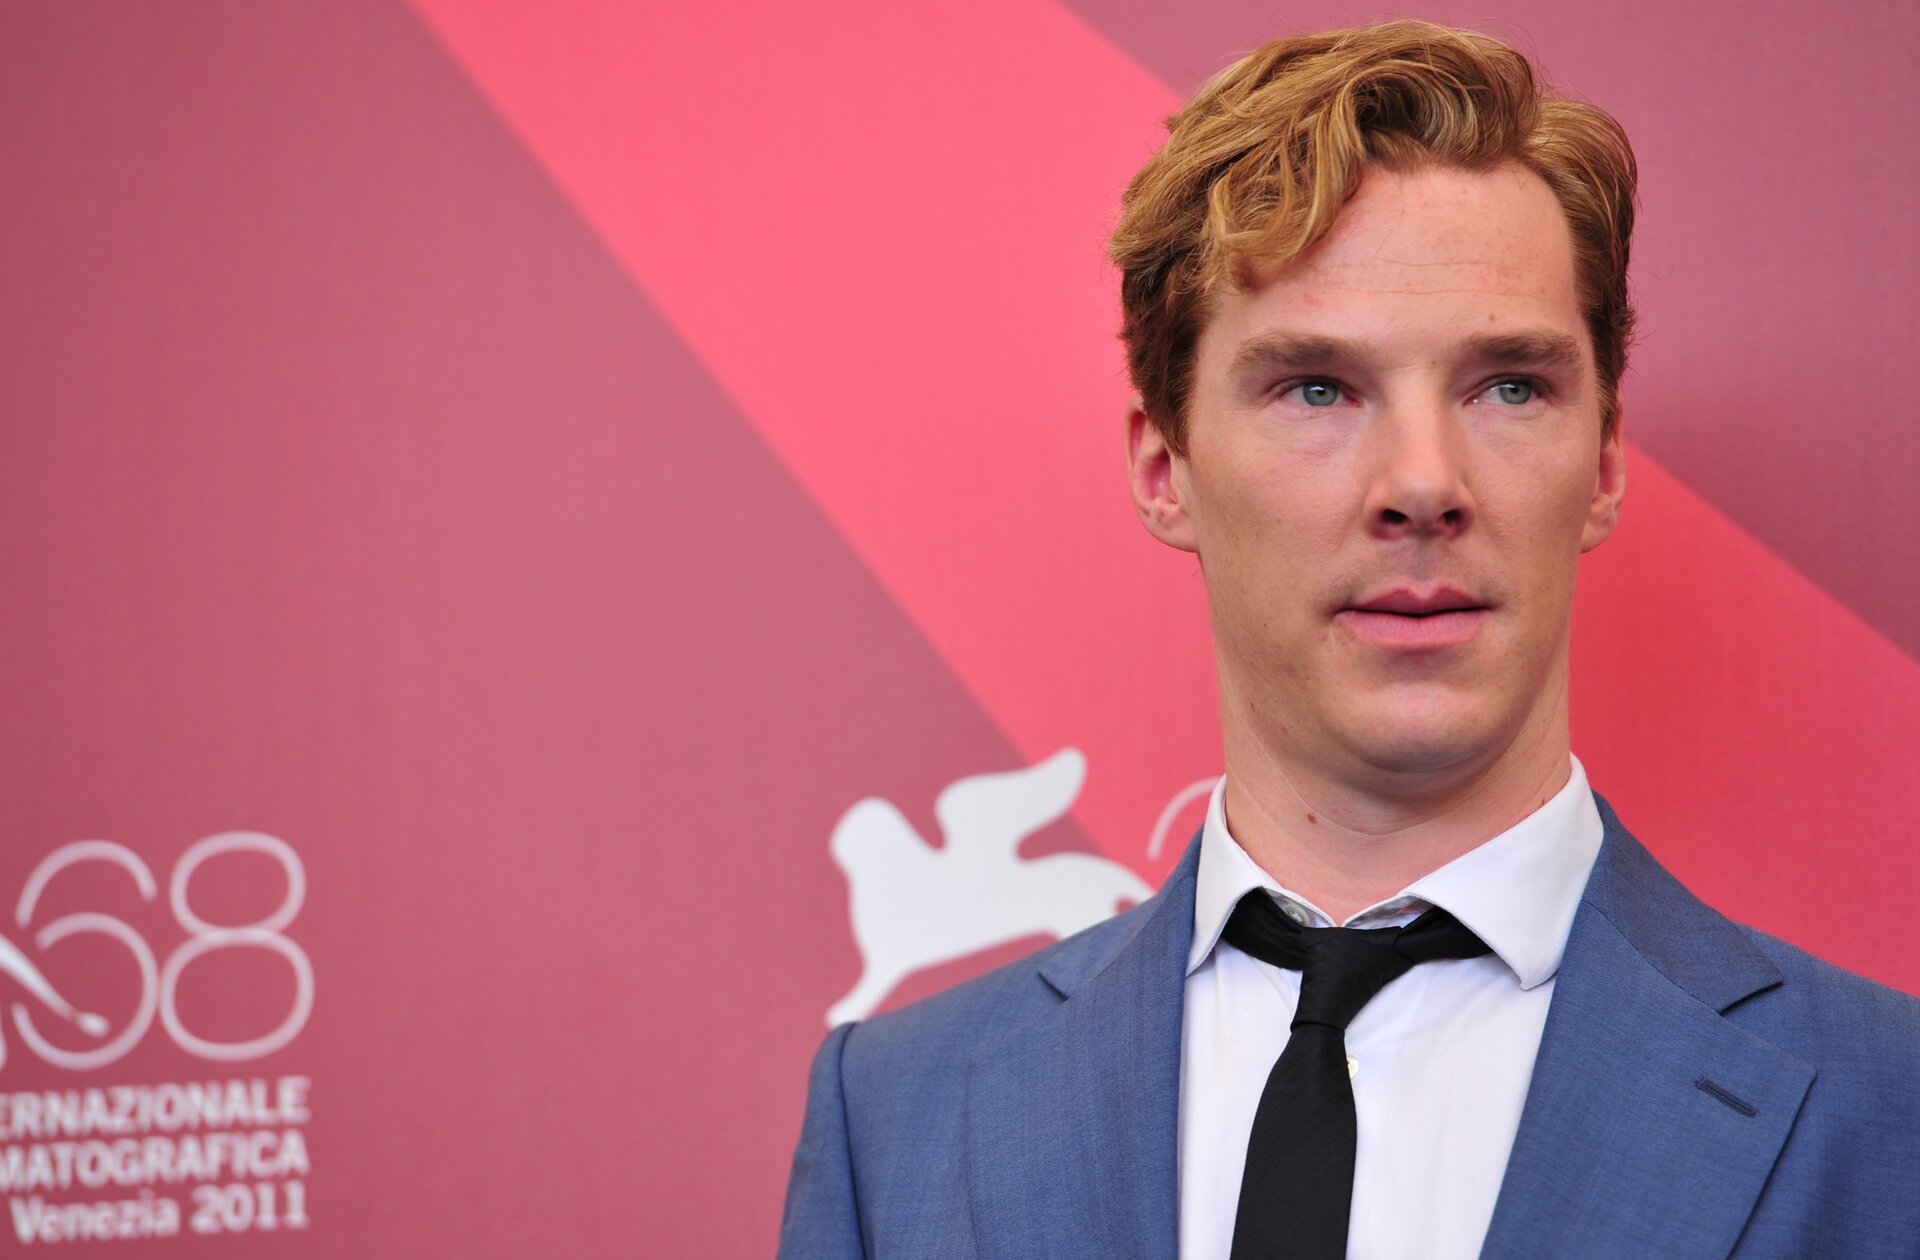 British actor Benedict Cumberbatch poses